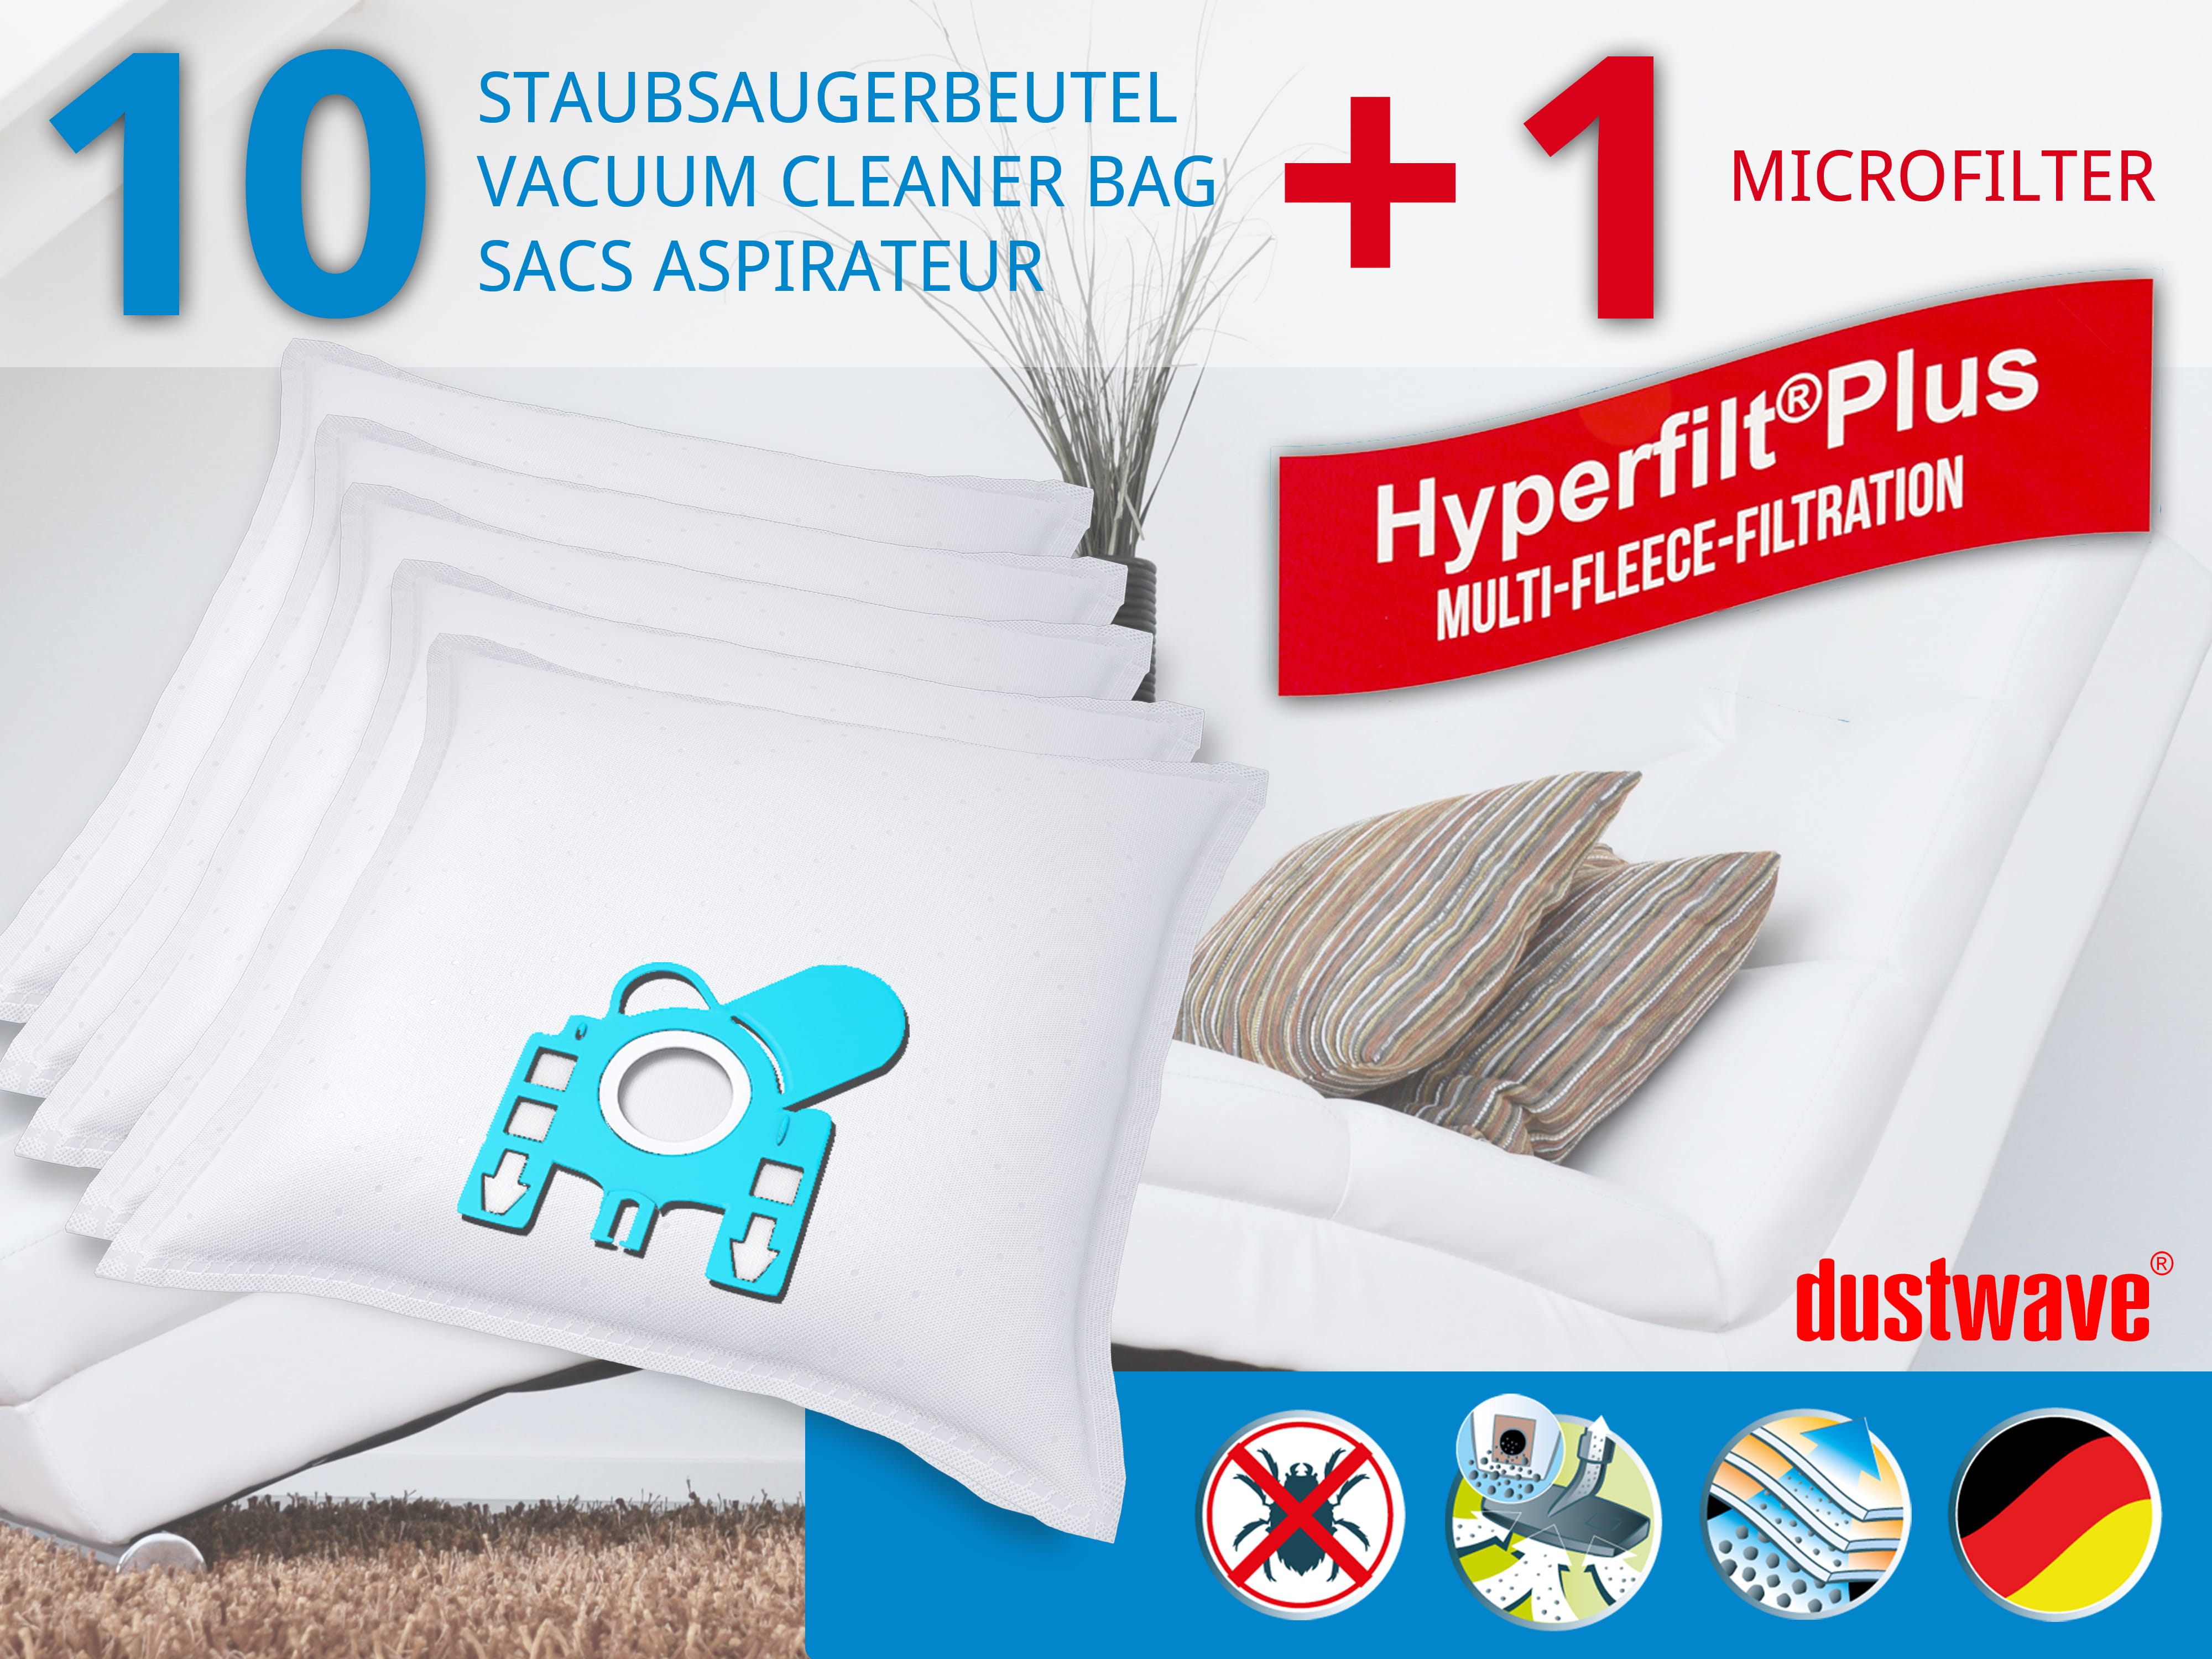 Dustwave® 10 Staubsaugerbeutel für Hoover H 22 / H22 - hocheffizient, mehrlagiges Mikrovlies mit Hygieneverschluss - Made in Germany